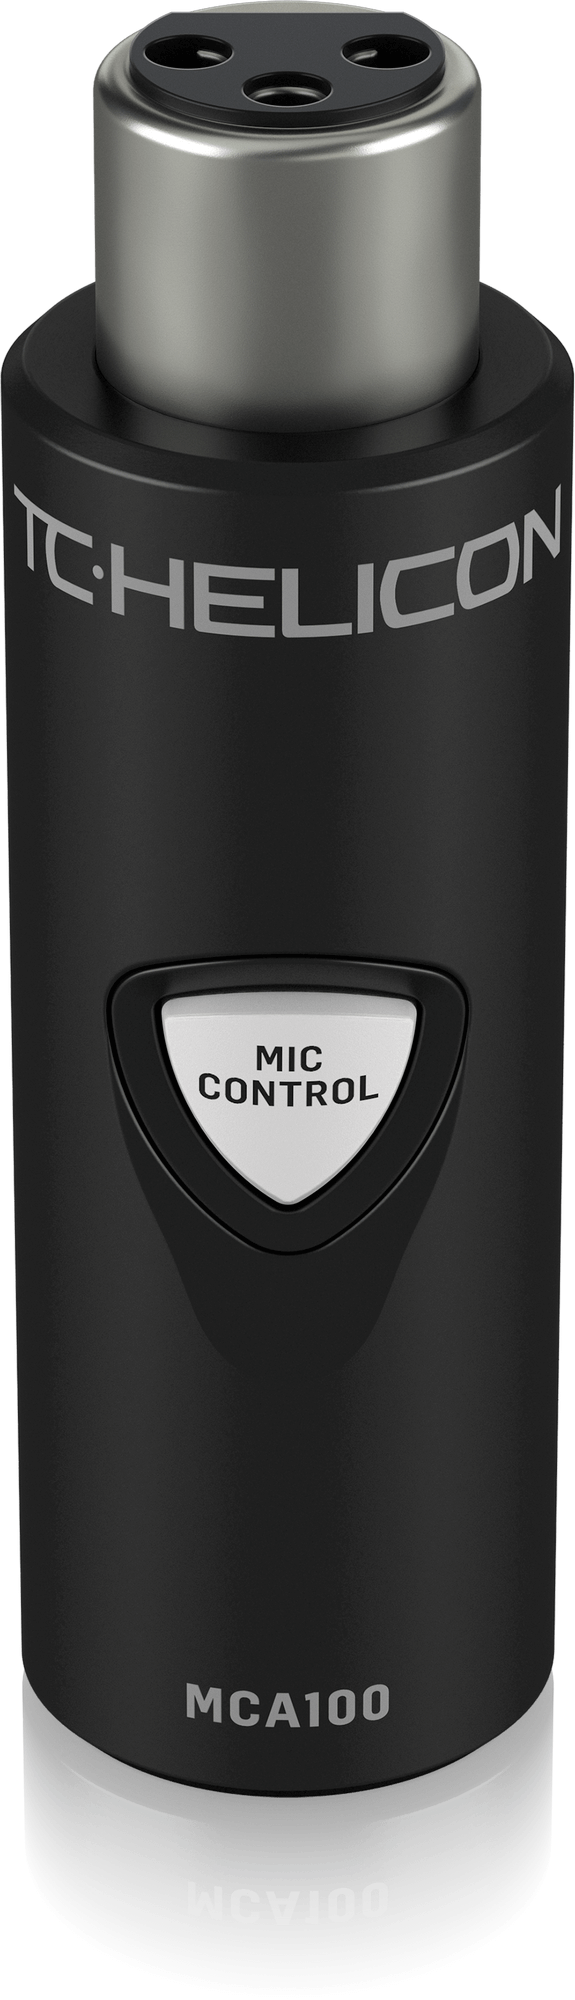 TC HELICON MCA 100MIC - микрофонный контроллер для вокальных процессоров TC HELICON купить в prostore.me